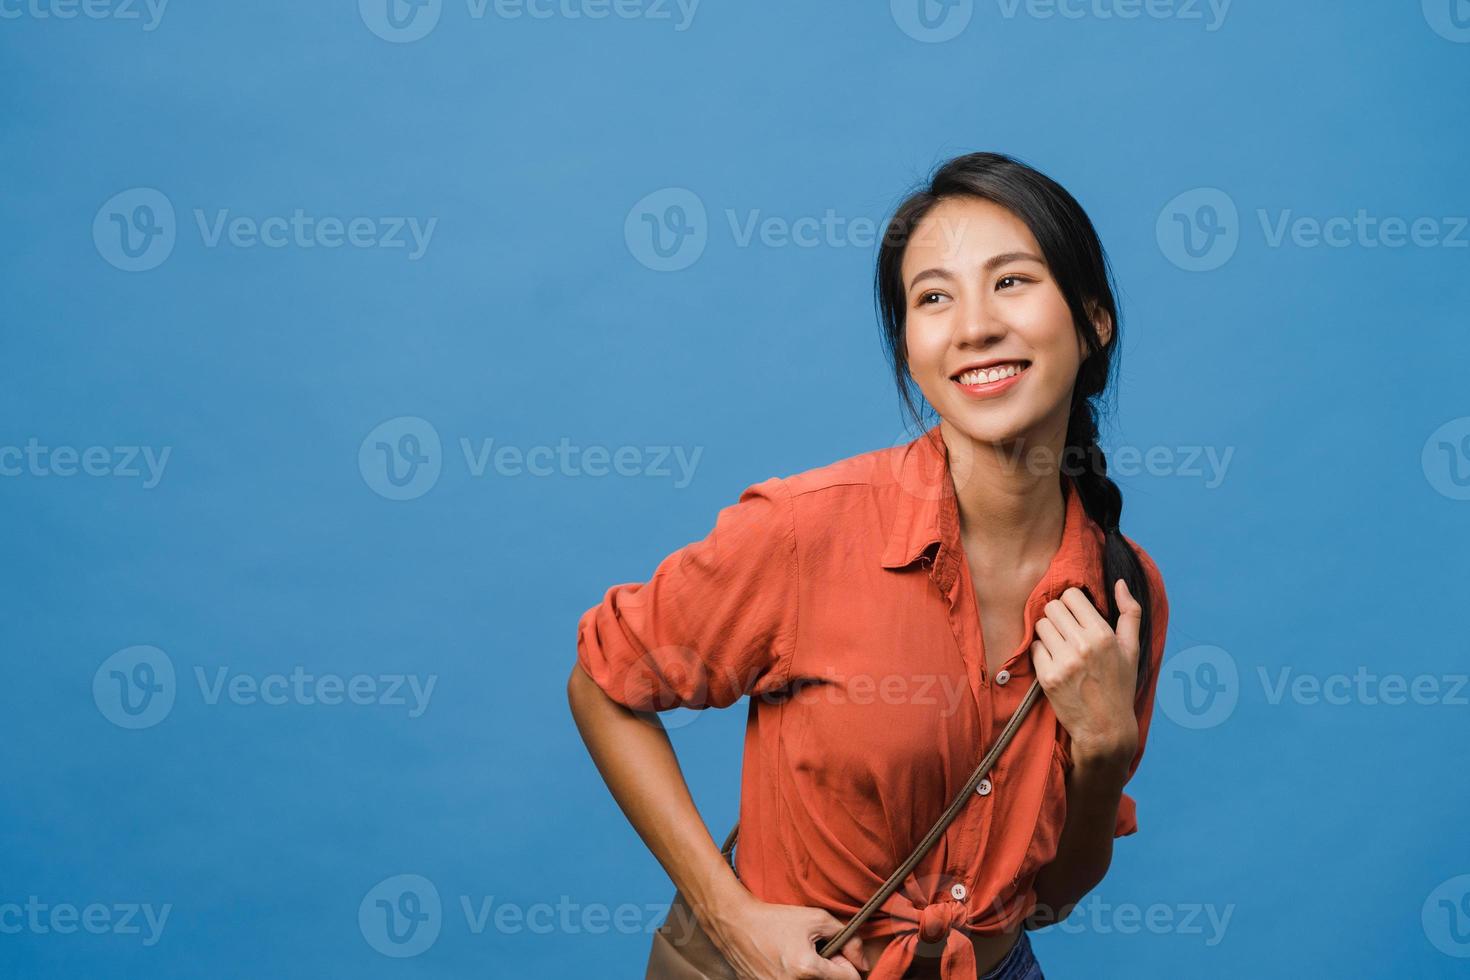 portret van jonge Aziatische dame met positieve uitdrukking, brede glimlach, gekleed in casual kleding over blauwe achtergrond. gelukkige schattige blije vrouw verheugt zich over succes. gezichtsuitdrukking concept. foto